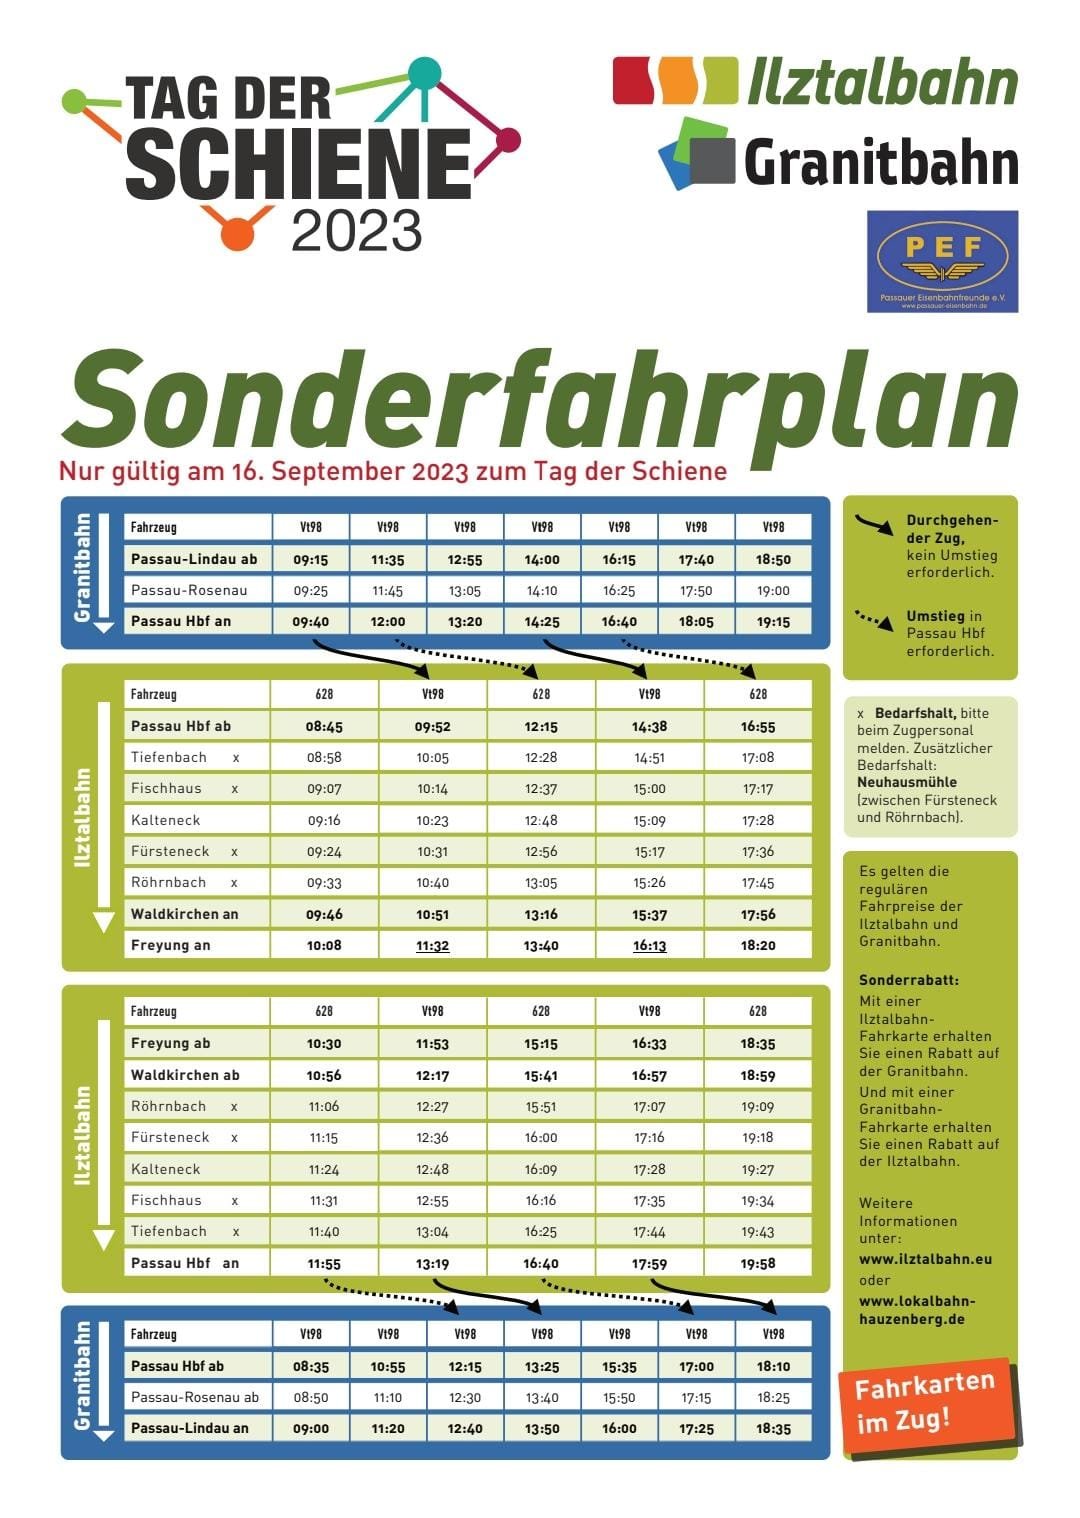 Samstag, 16.09.2023: Tag der Schiene 2023 – nach/von Passau-Lindau mit der Granitbahn - Lokalbahn Hauzenberg